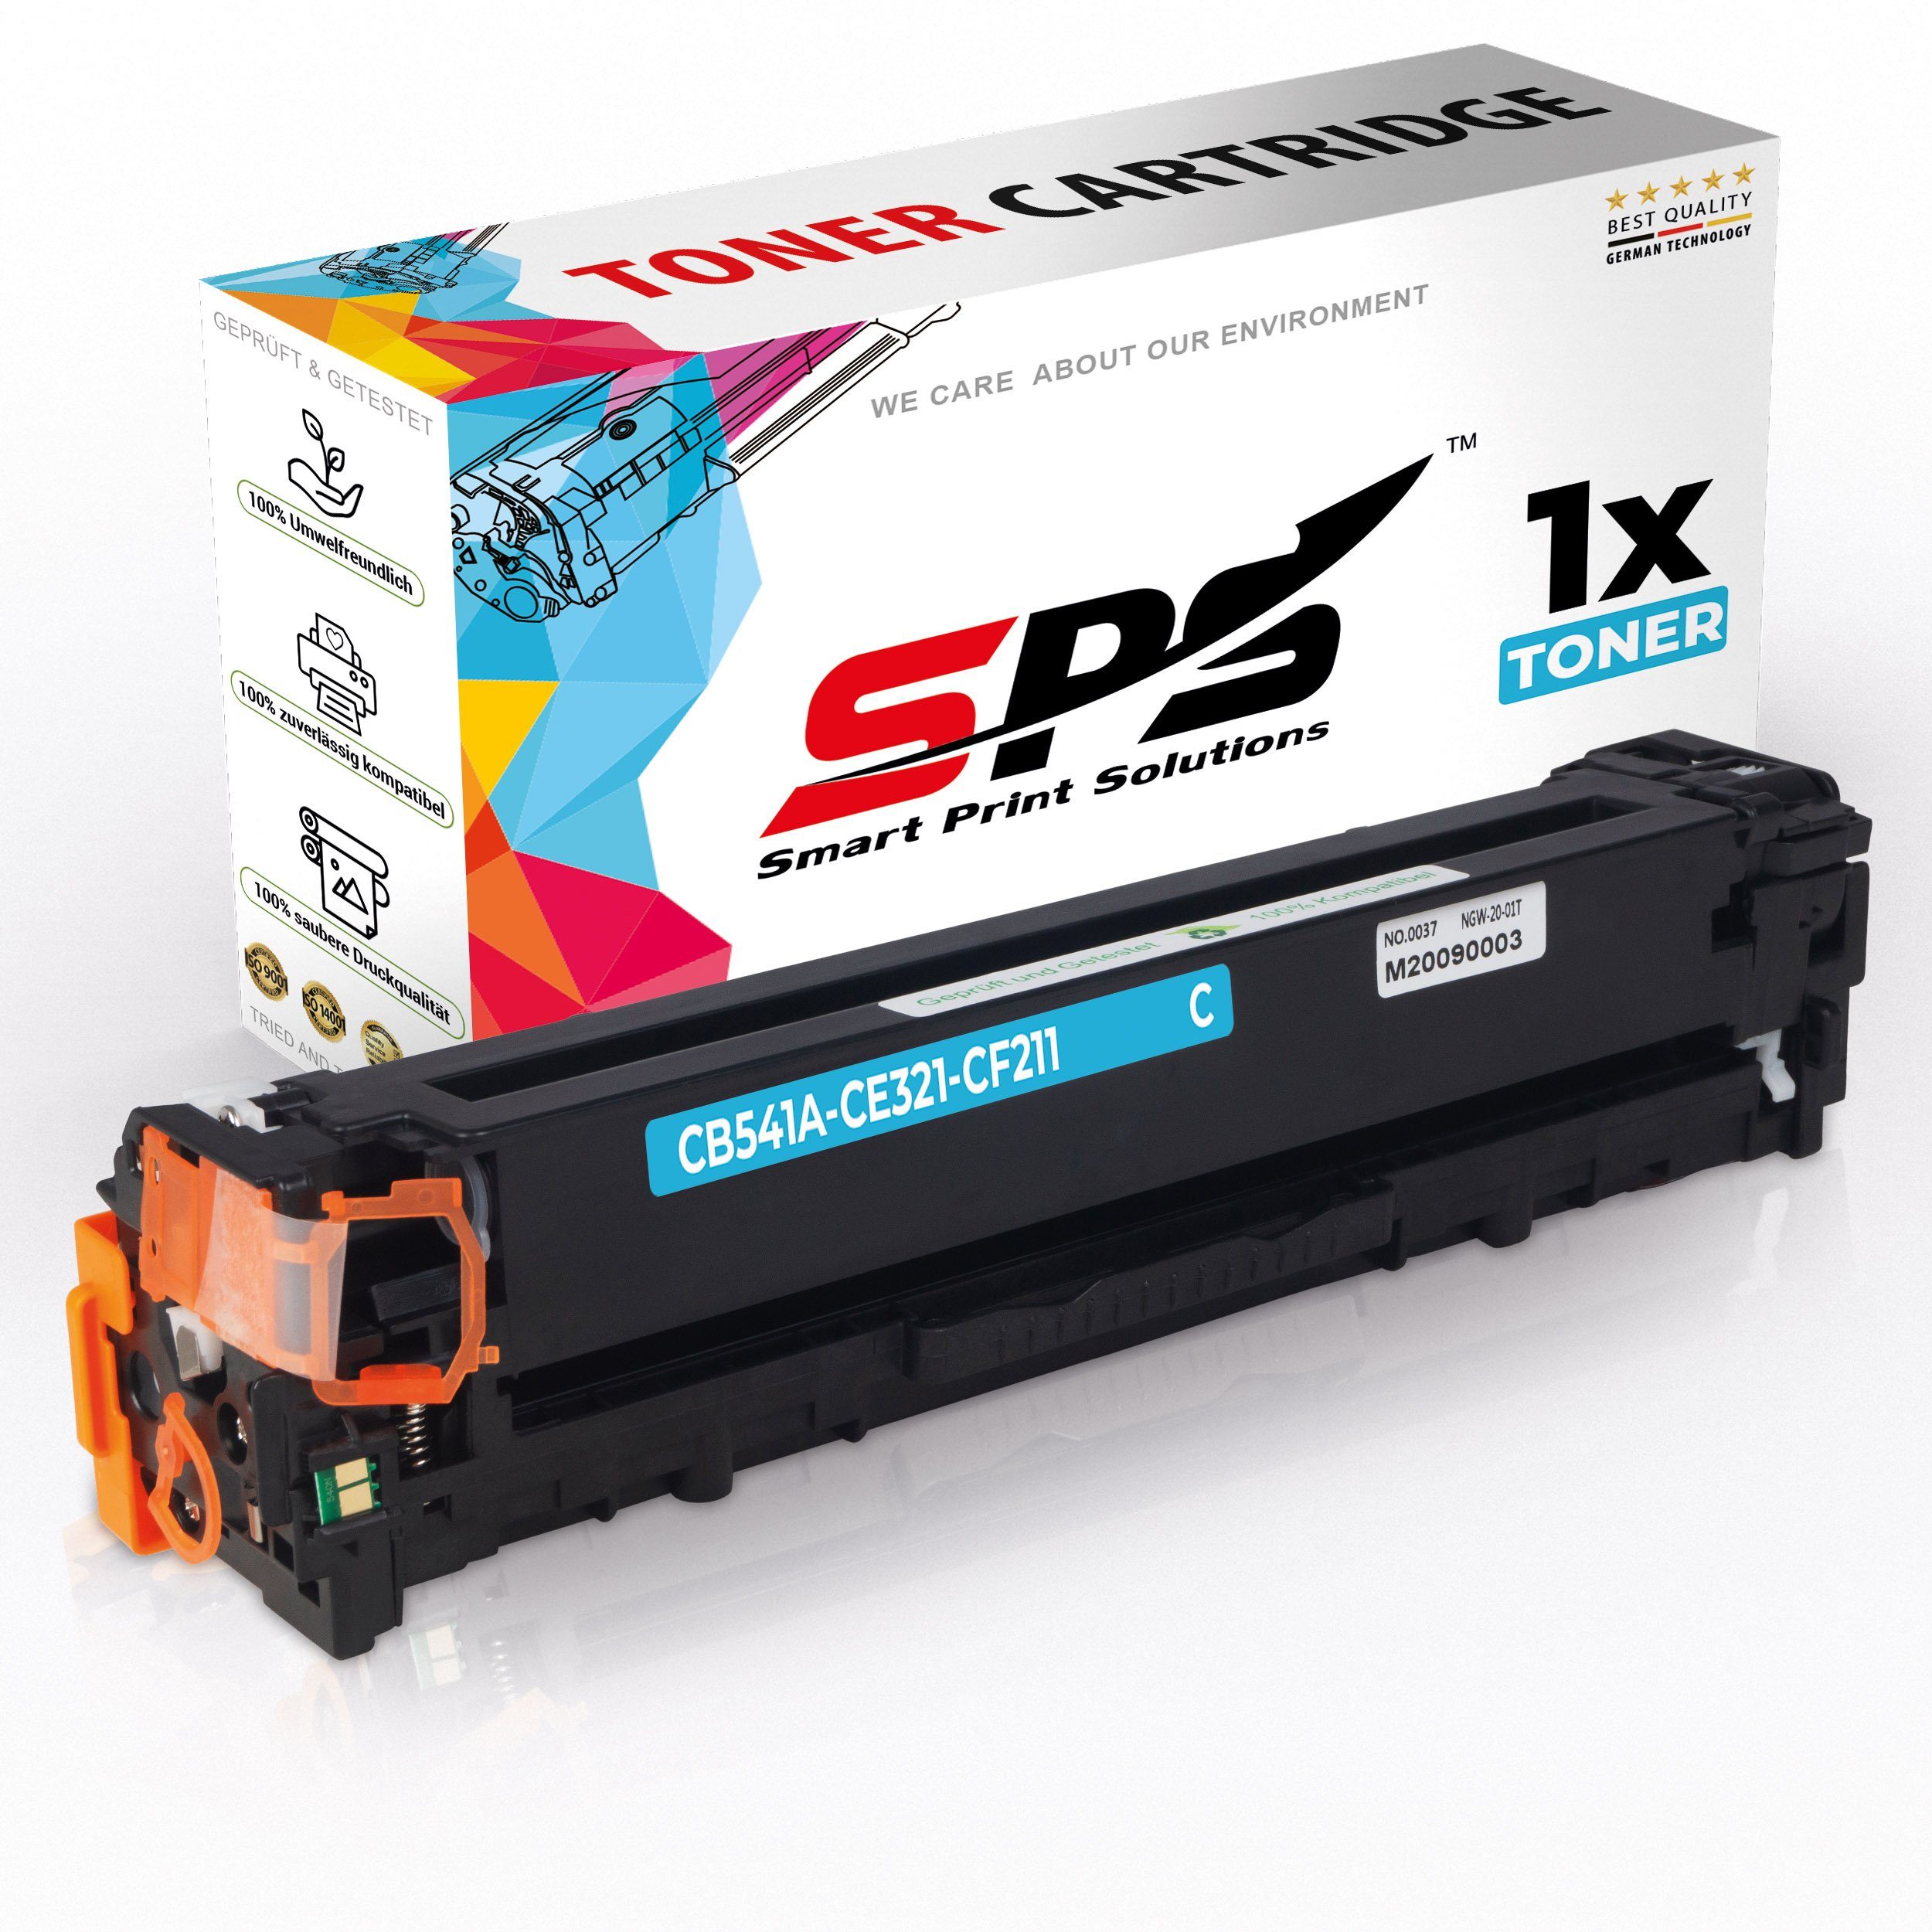 SPS Tonerkartusche Kompatibel für HP Color Laserjet CP1210 125A CB541, (1er Pack)